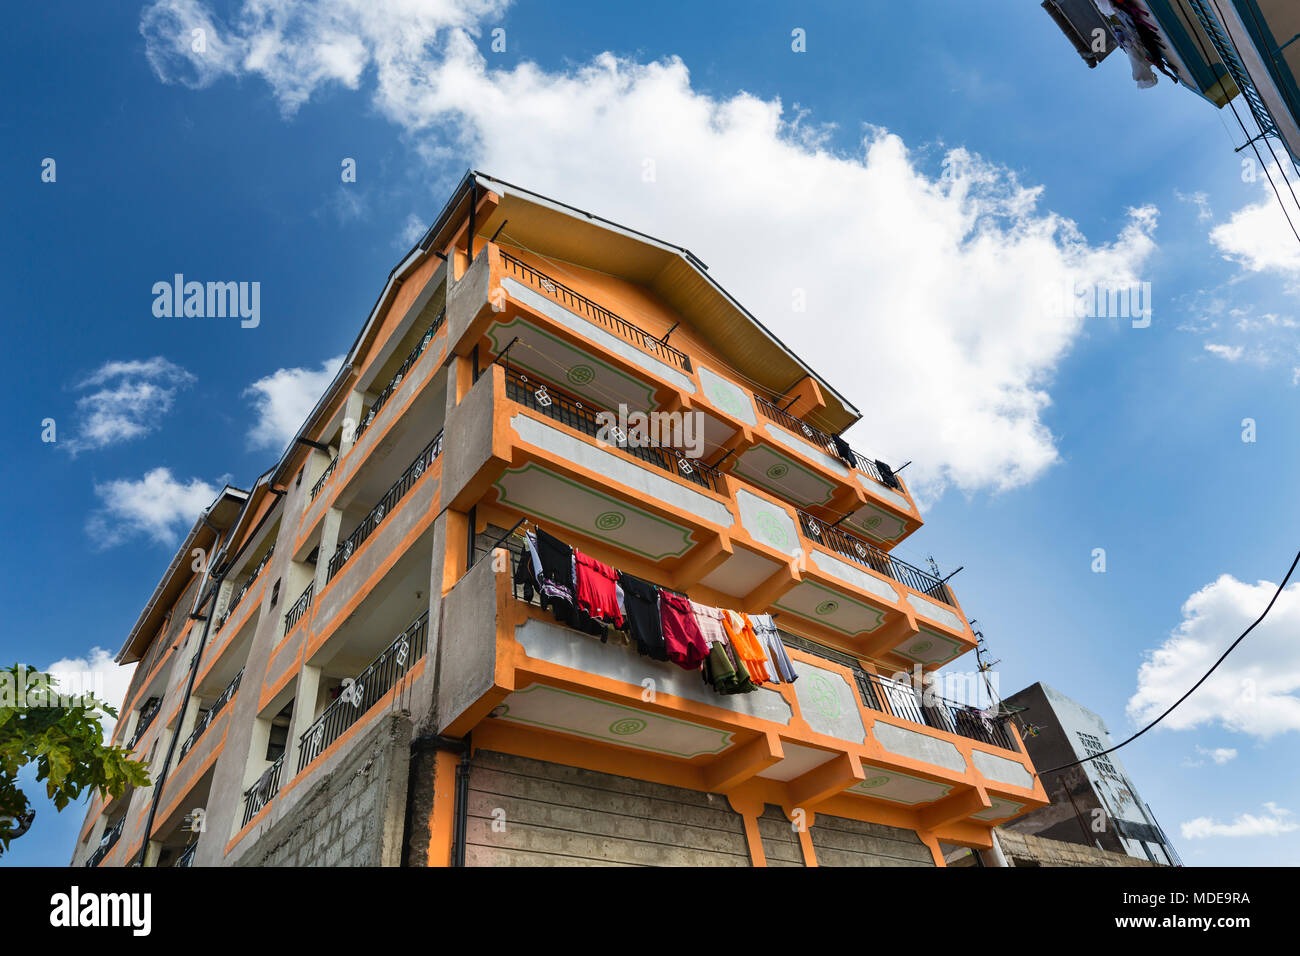 Maison typique de l'Afrique colorée en Tassia, un quartier résidentiel à l'Est de Nairobi, Kenya. Banque D'Images